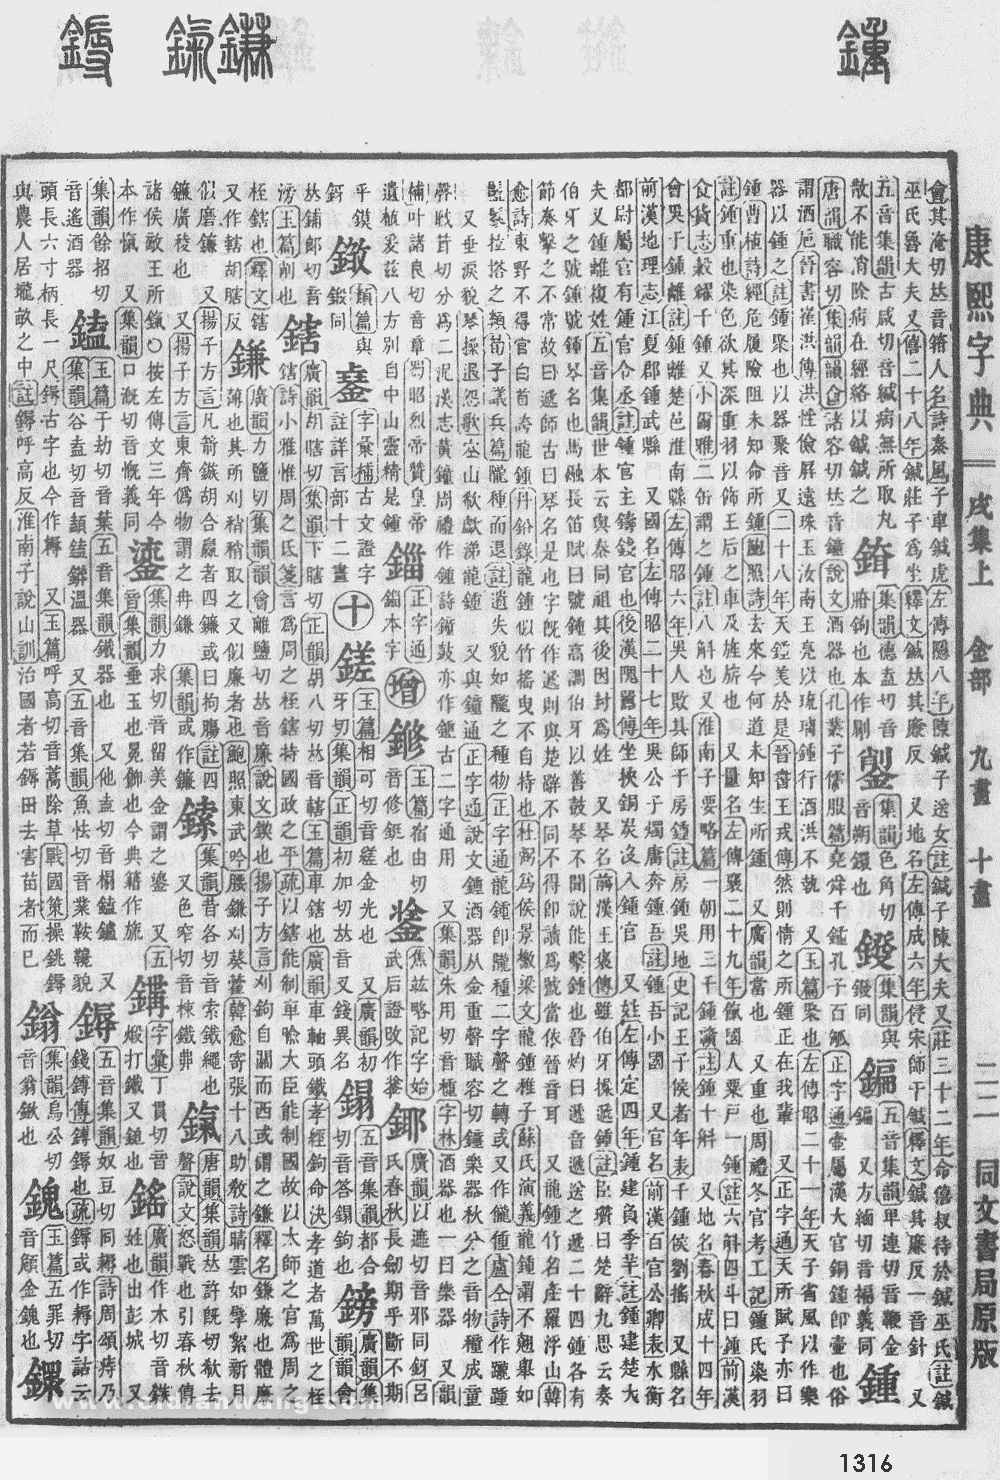 康熙字典掃描版第1316頁